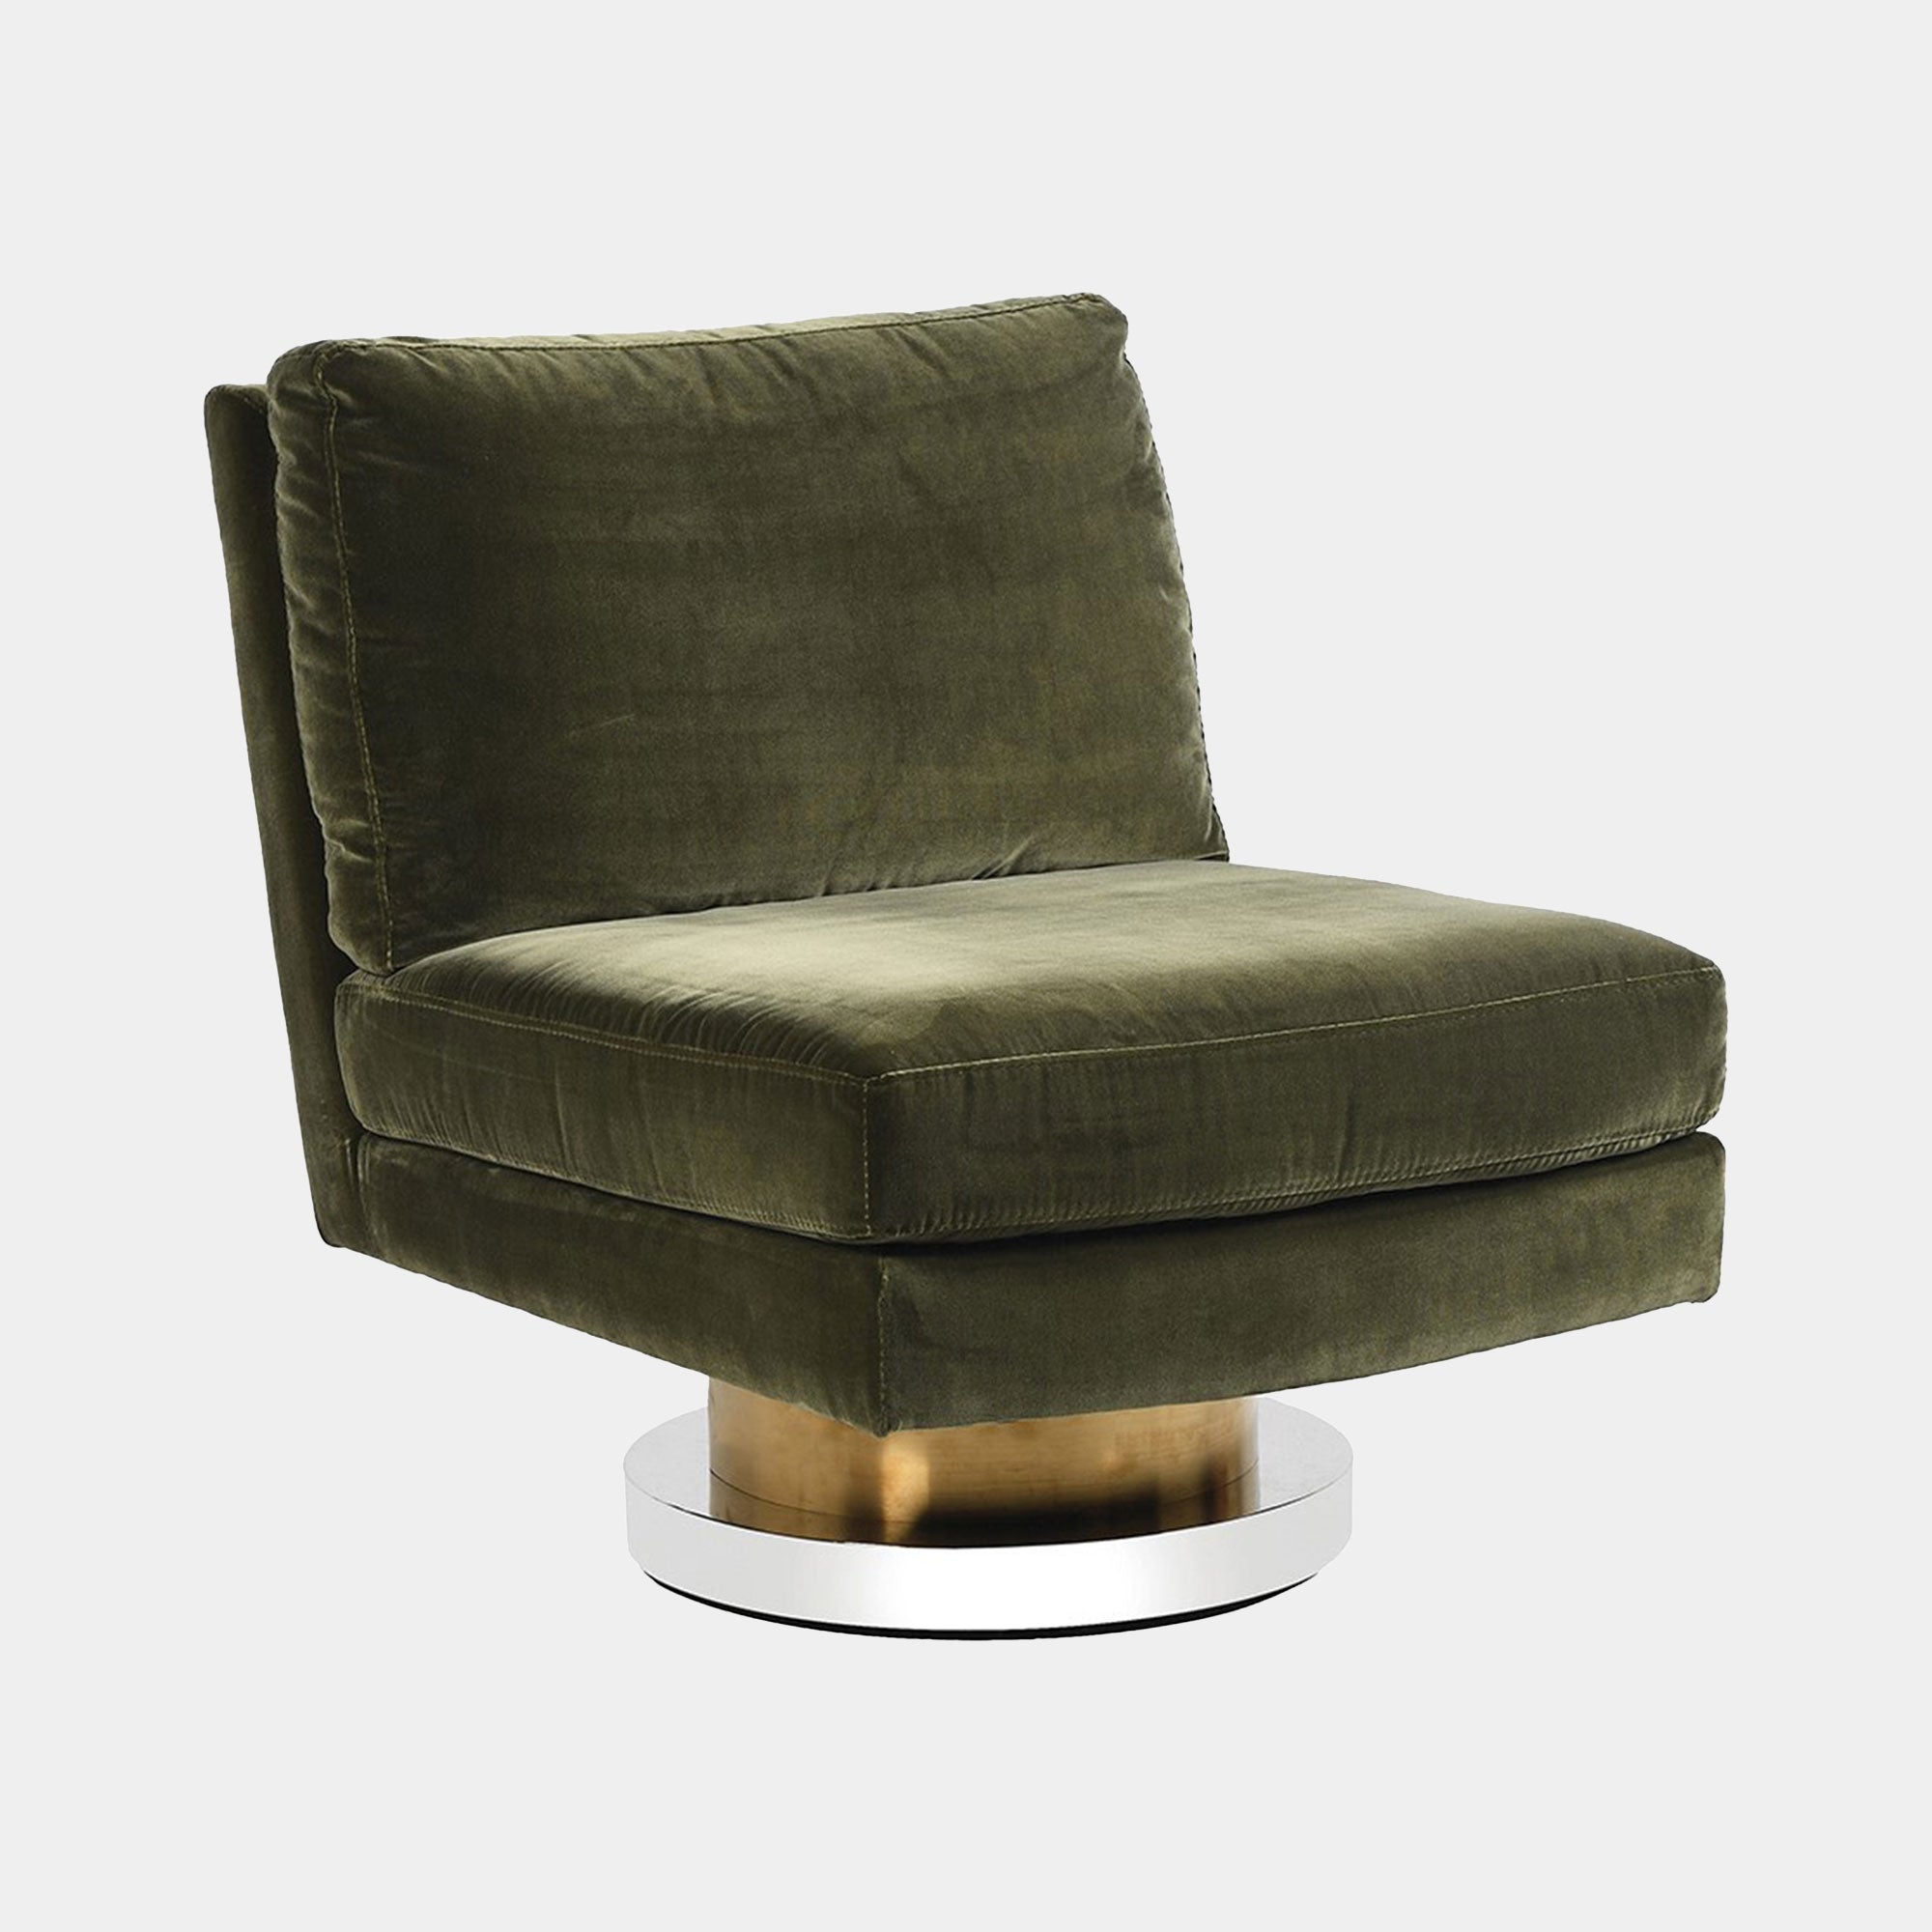 Swivel Chair In Green Fabric